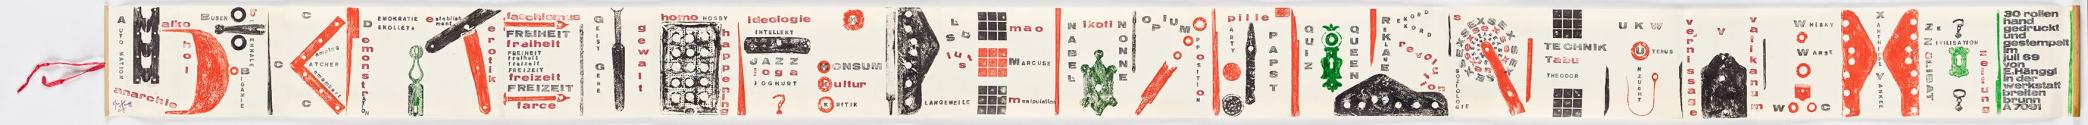 Eduard Hänggi, Von A bis Z (Alphabetbuchrolle), 1969, Materialdrucke und Handstempel, gerollt,  ...